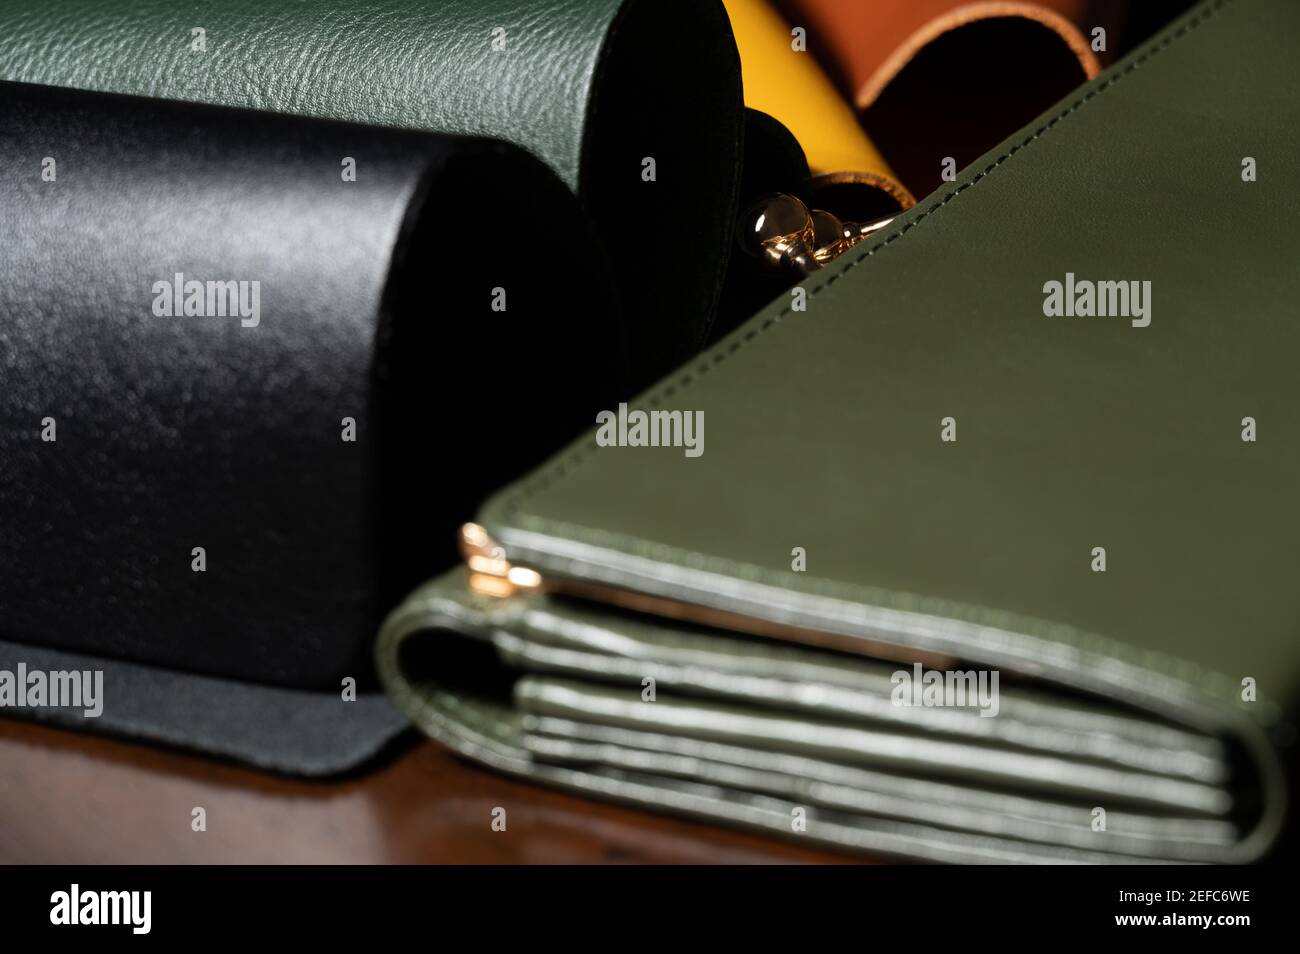 4 couleurs échantillon de cuir (noir, vert, jaune, marron) sur table en bois avec portefeuille vert avec fermoir métallique de couleur or. Matériaux pour l'industrie du cuir. Banque D'Images